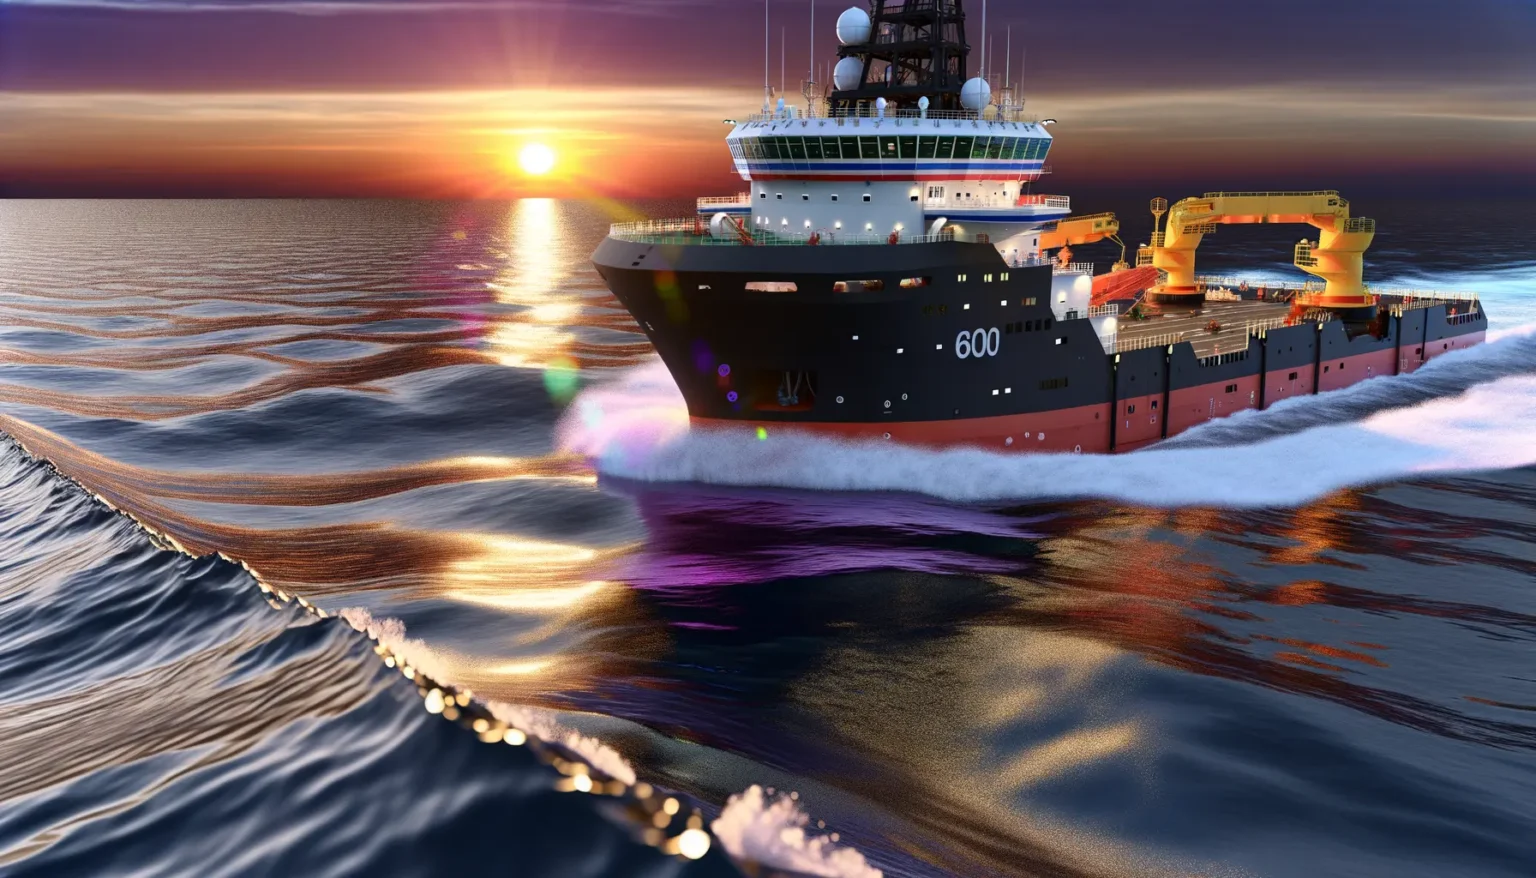 Großes, modernes Forschungsschiff fährt bei Sonnenuntergang auf dem Meer, mit sichtbaren Wellen und Lichtreflexionen auf dem Wasser.